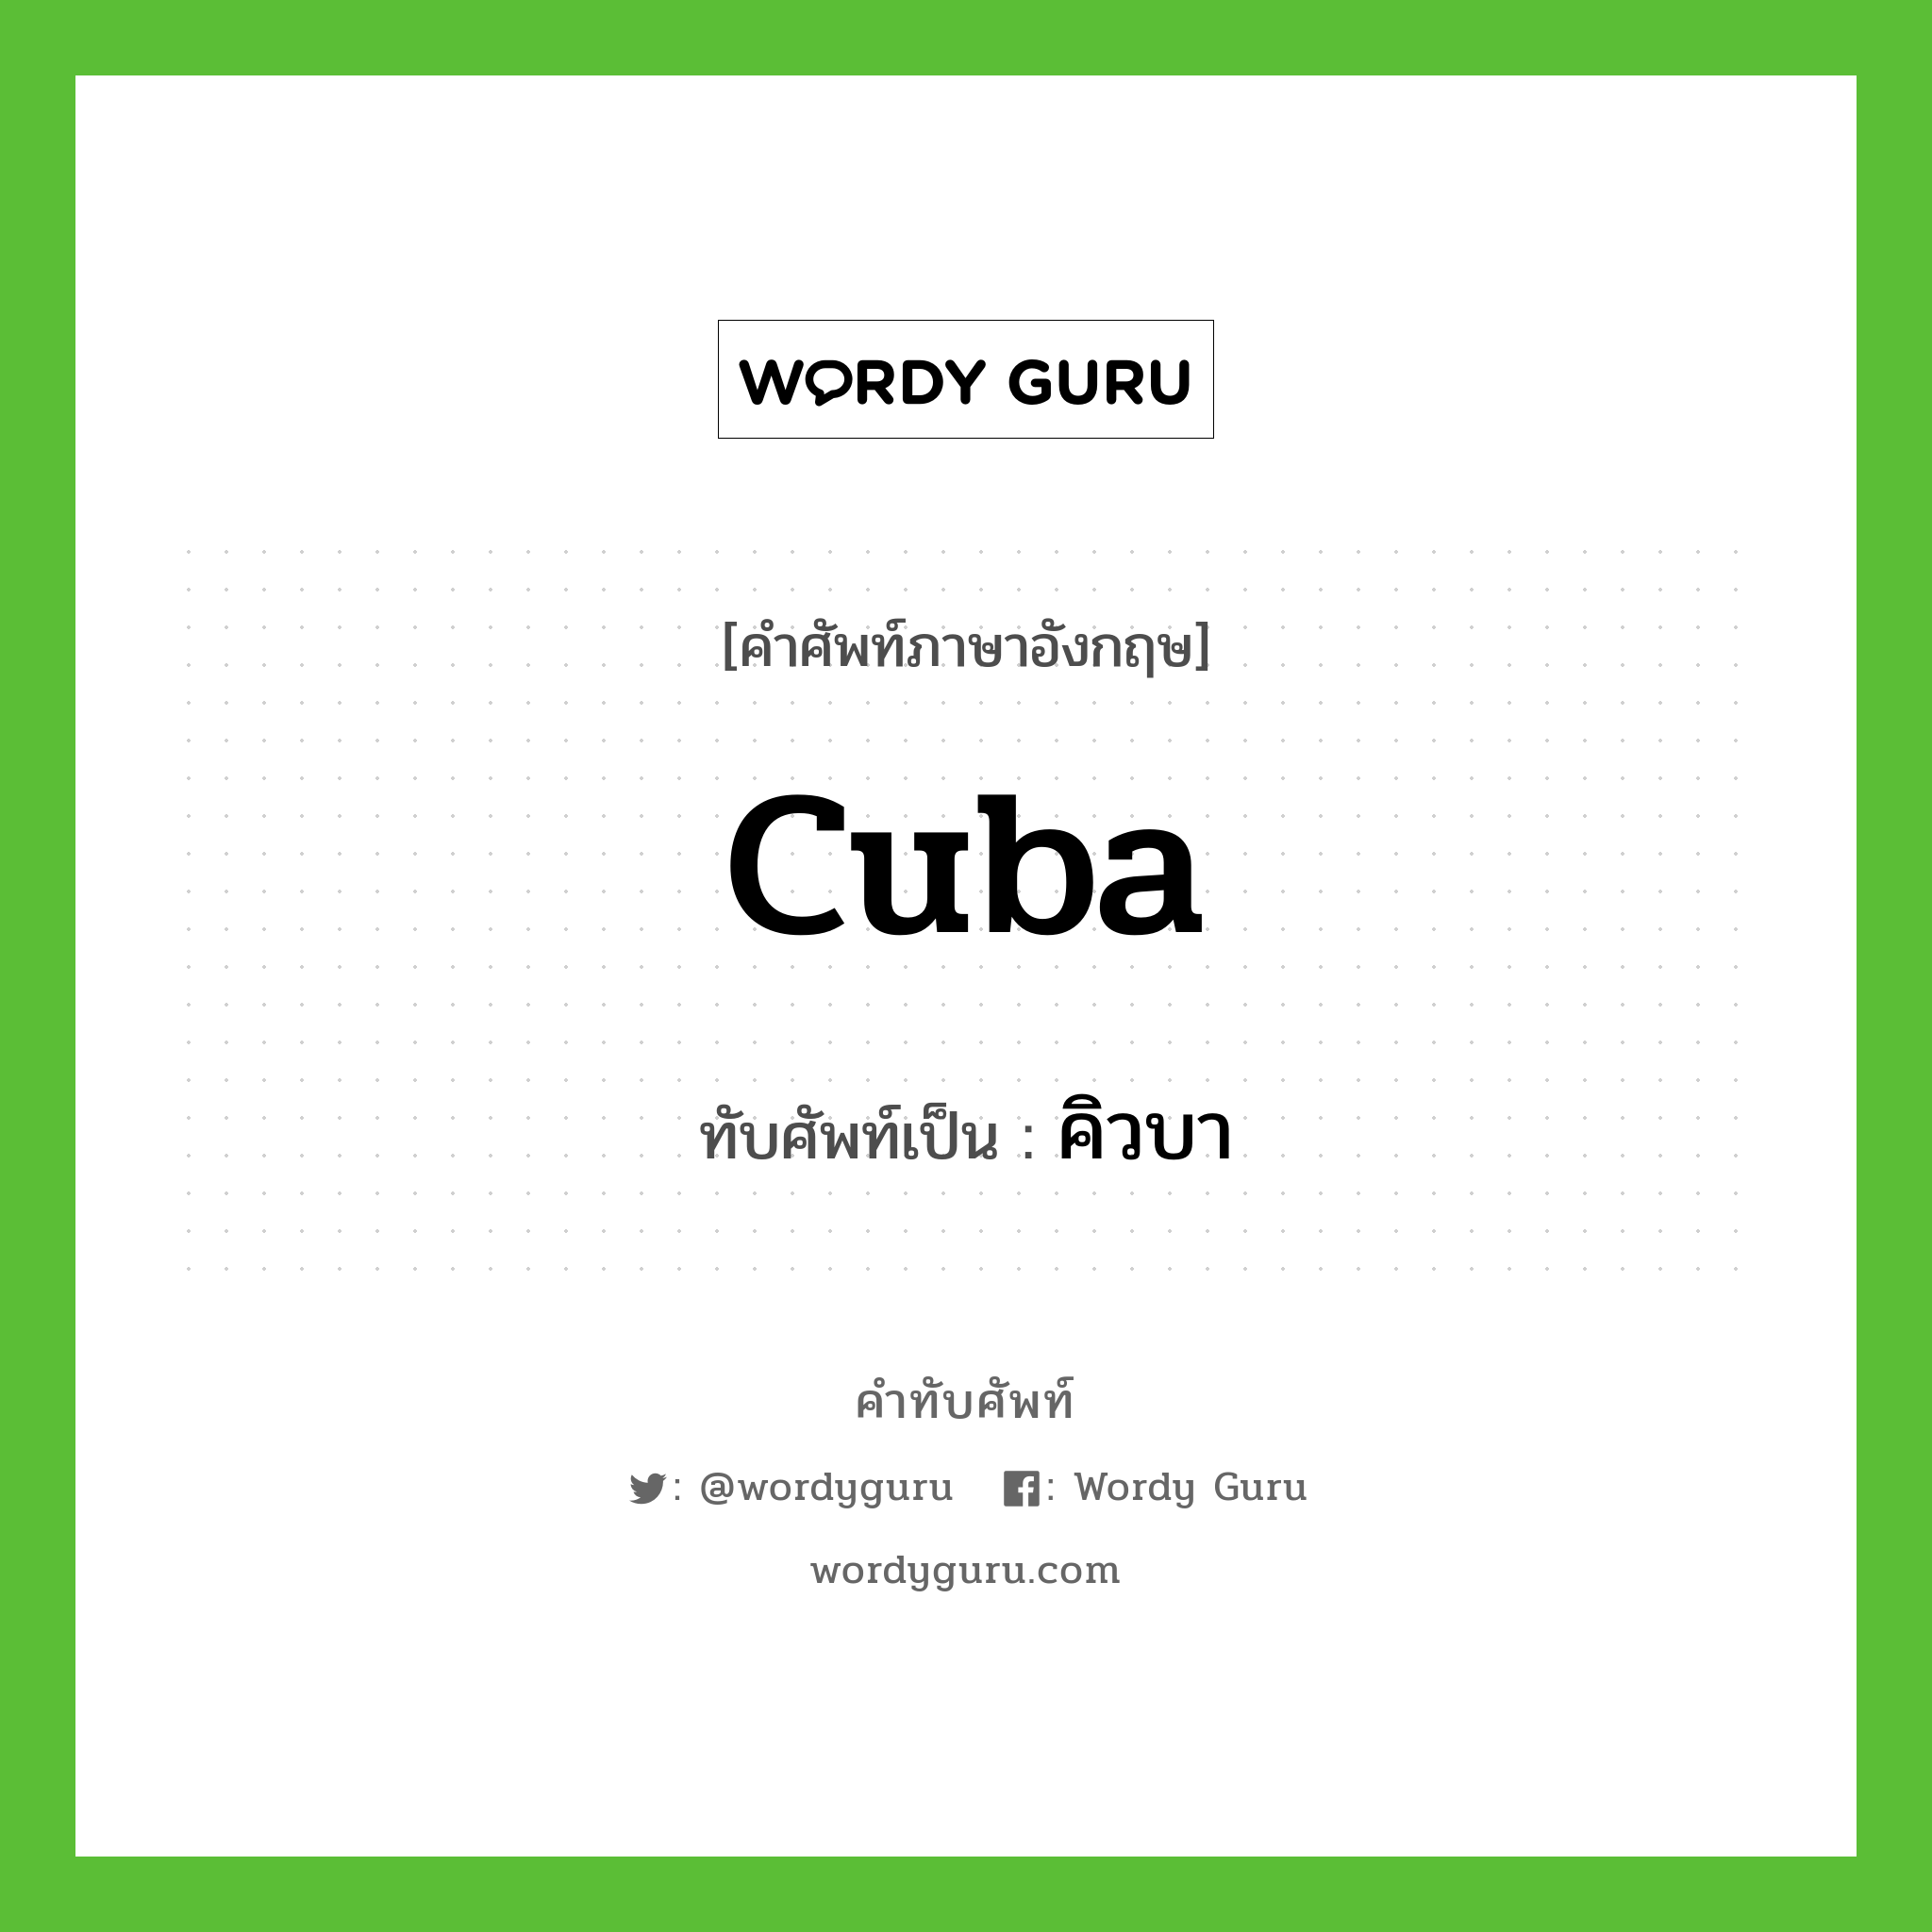 Cuba เขียนเป็นคำไทยว่าอะไร?, คำศัพท์ภาษาอังกฤษ Cuba ทับศัพท์เป็น คิวบา